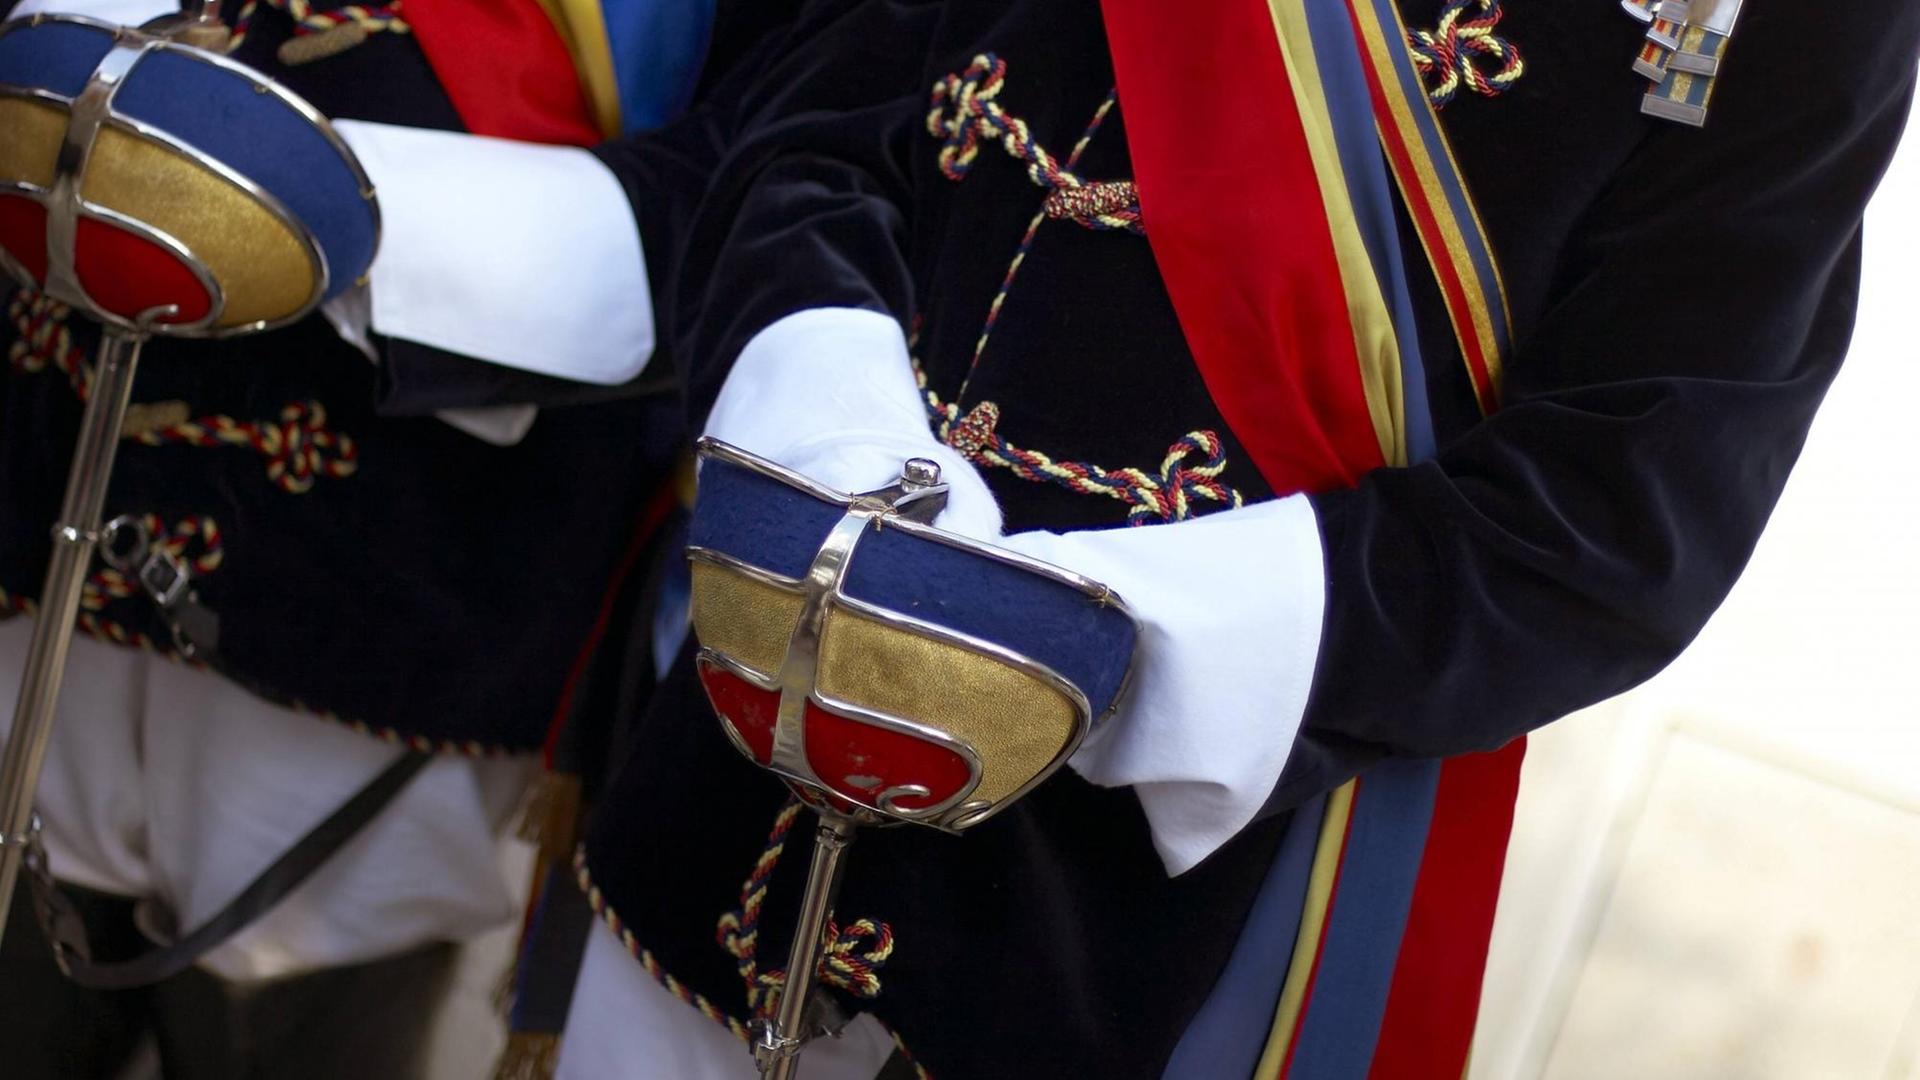 Degenglocken in den Burschenfarben Rot-Gold-Blau der Katholisch Österreichischen Hochschulverbindung Pannonia werden in weiß behandschuhten Händen gehalten.